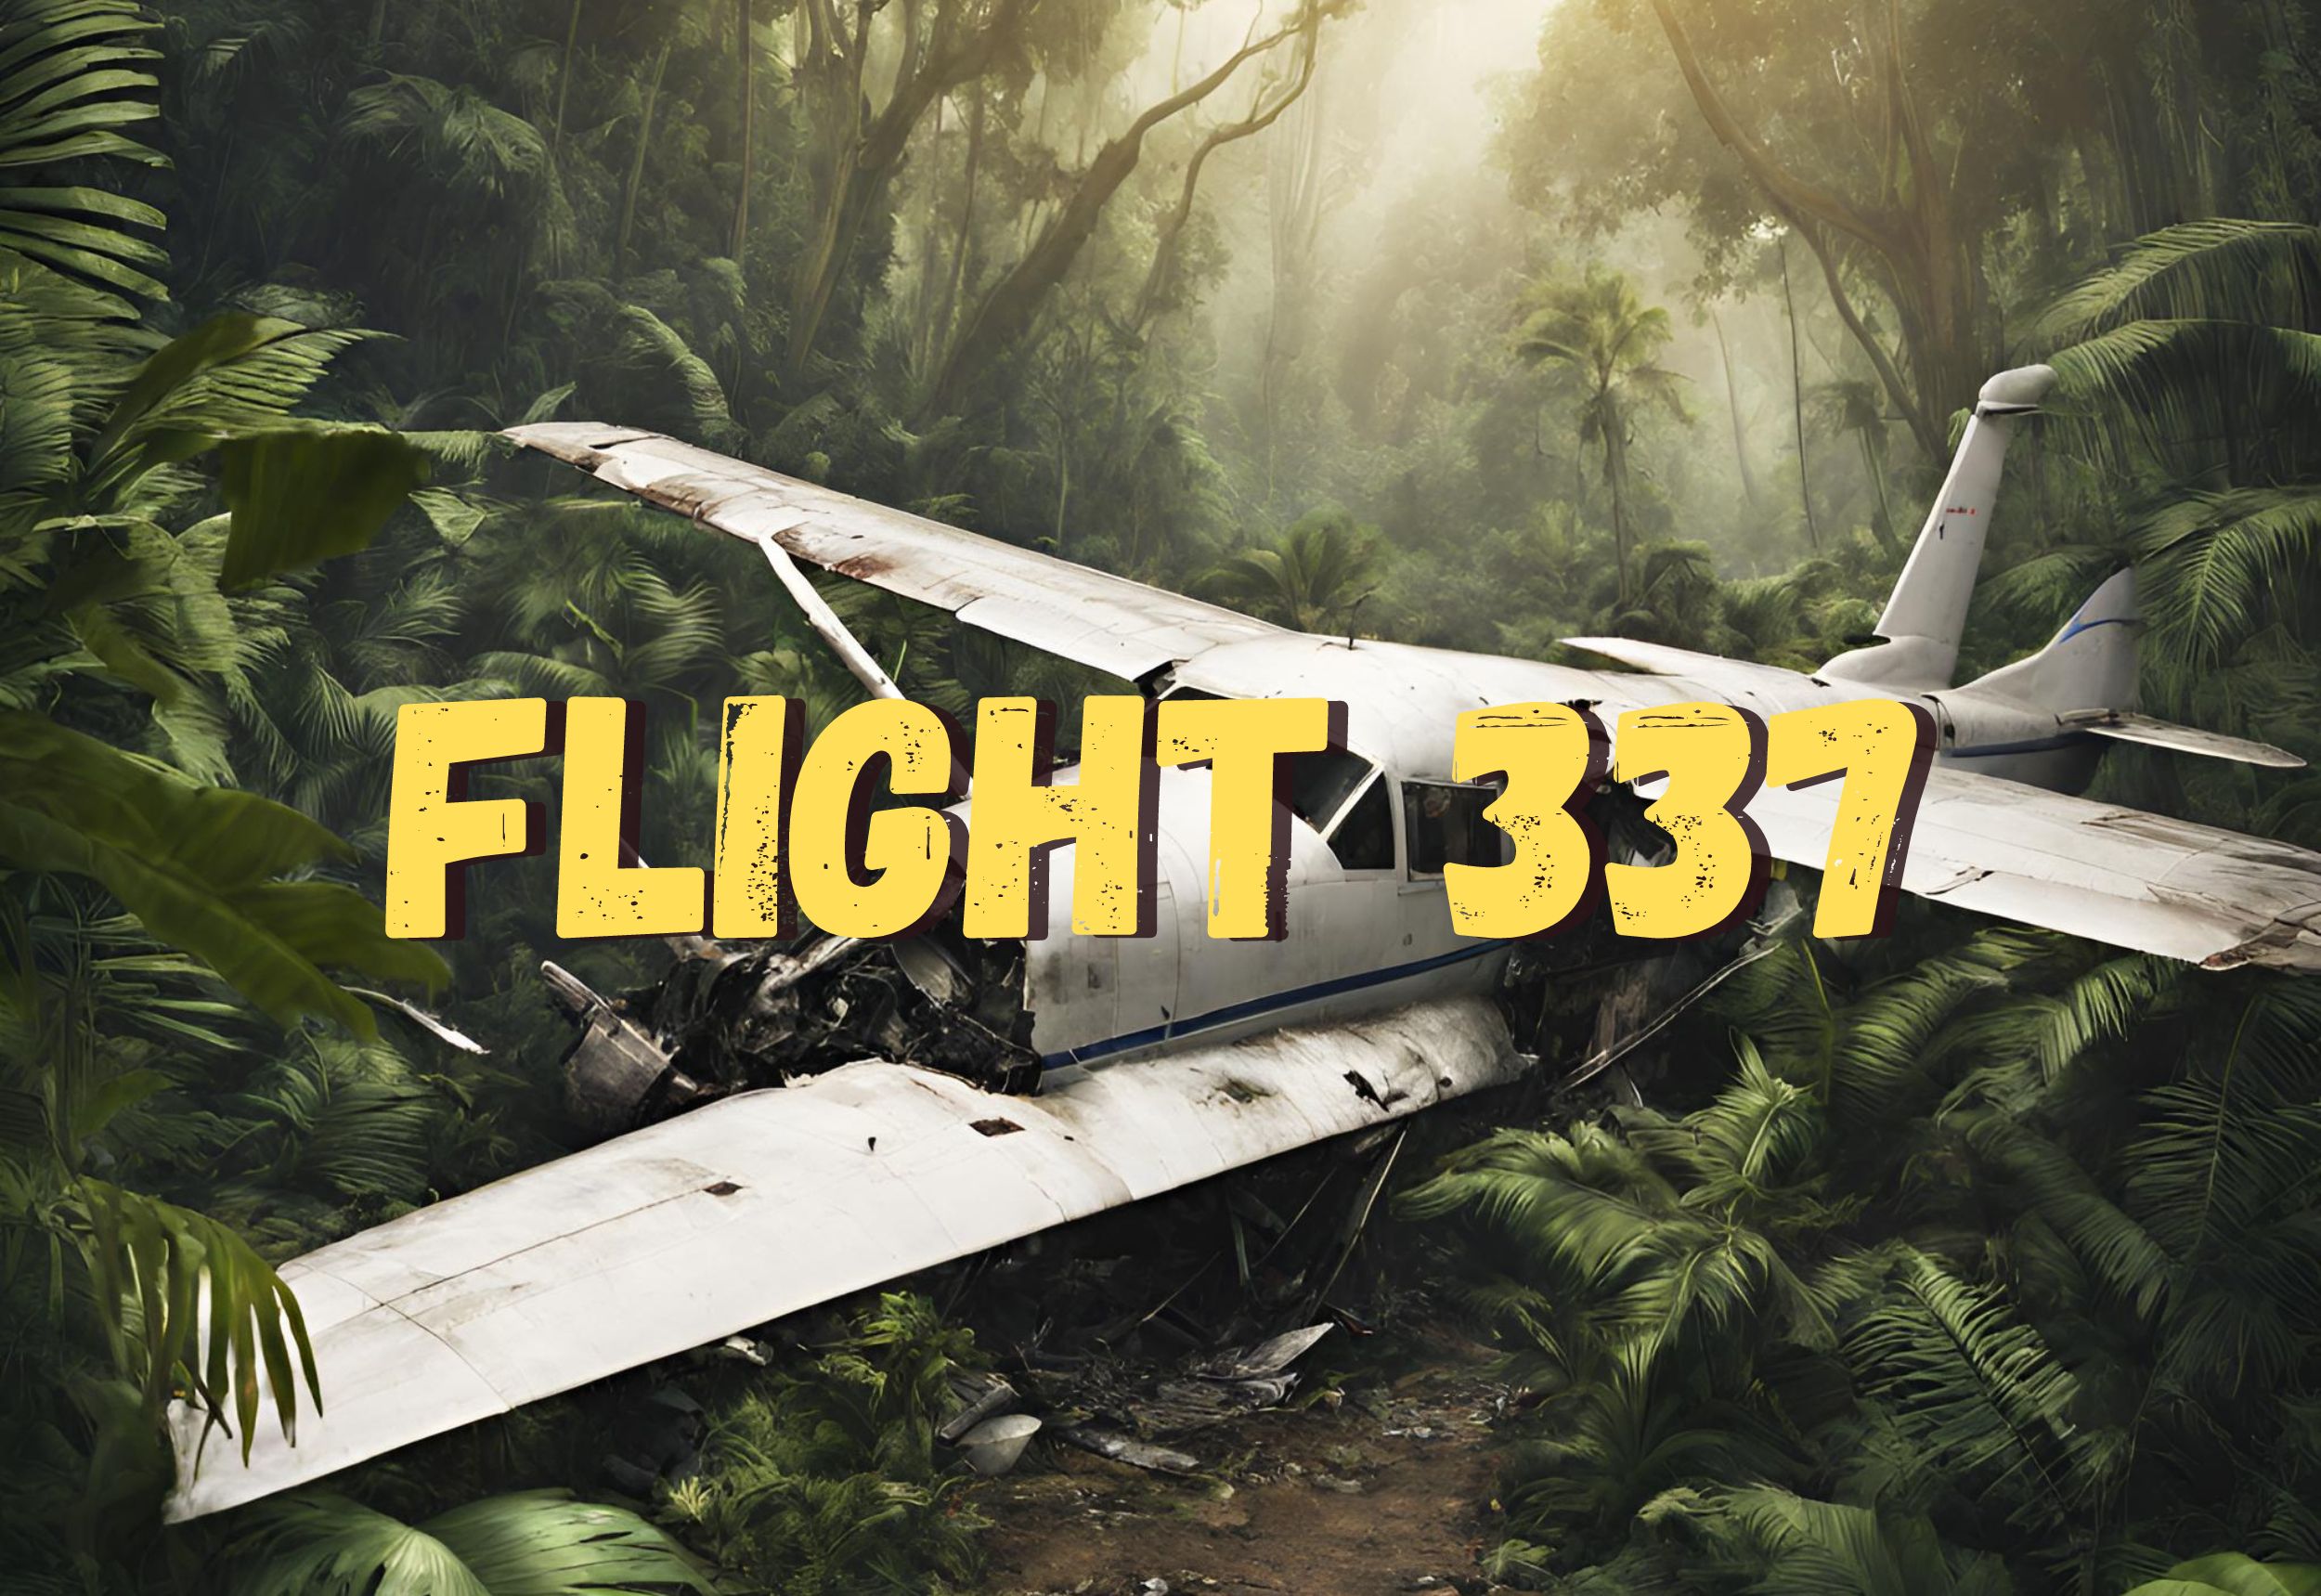 Flight 337